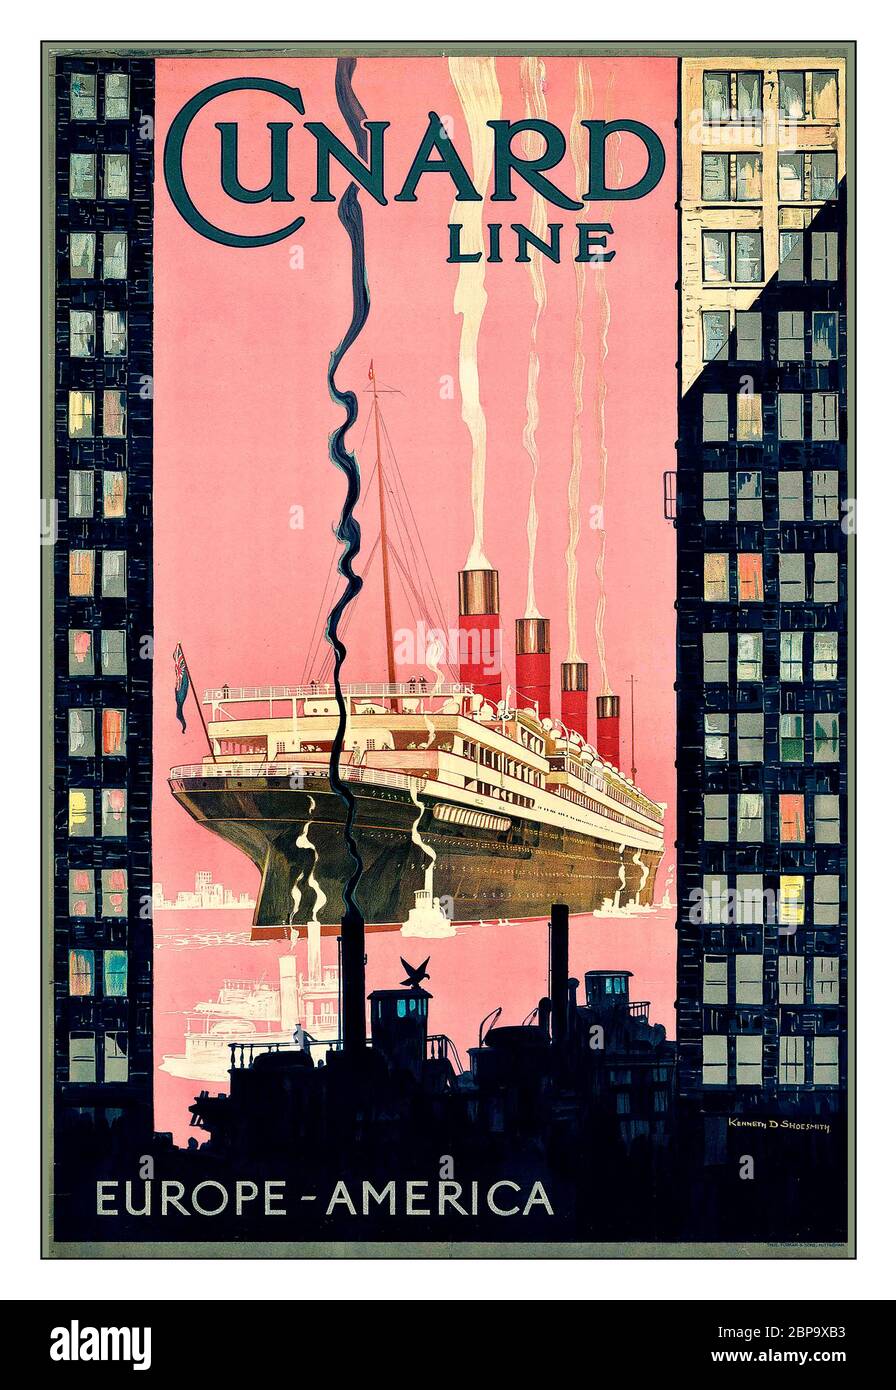 REISEKREUZFAHRTSCHEIN AUS den 1920er JAHREN CUNARD LINE, EUROPA-AMERIKA Lithographie in Farben, um 1925, von Kenneth Denton Shoesmith (1890-1939) gedruckt bei Forman & Sons, Nottingham, Stockfoto